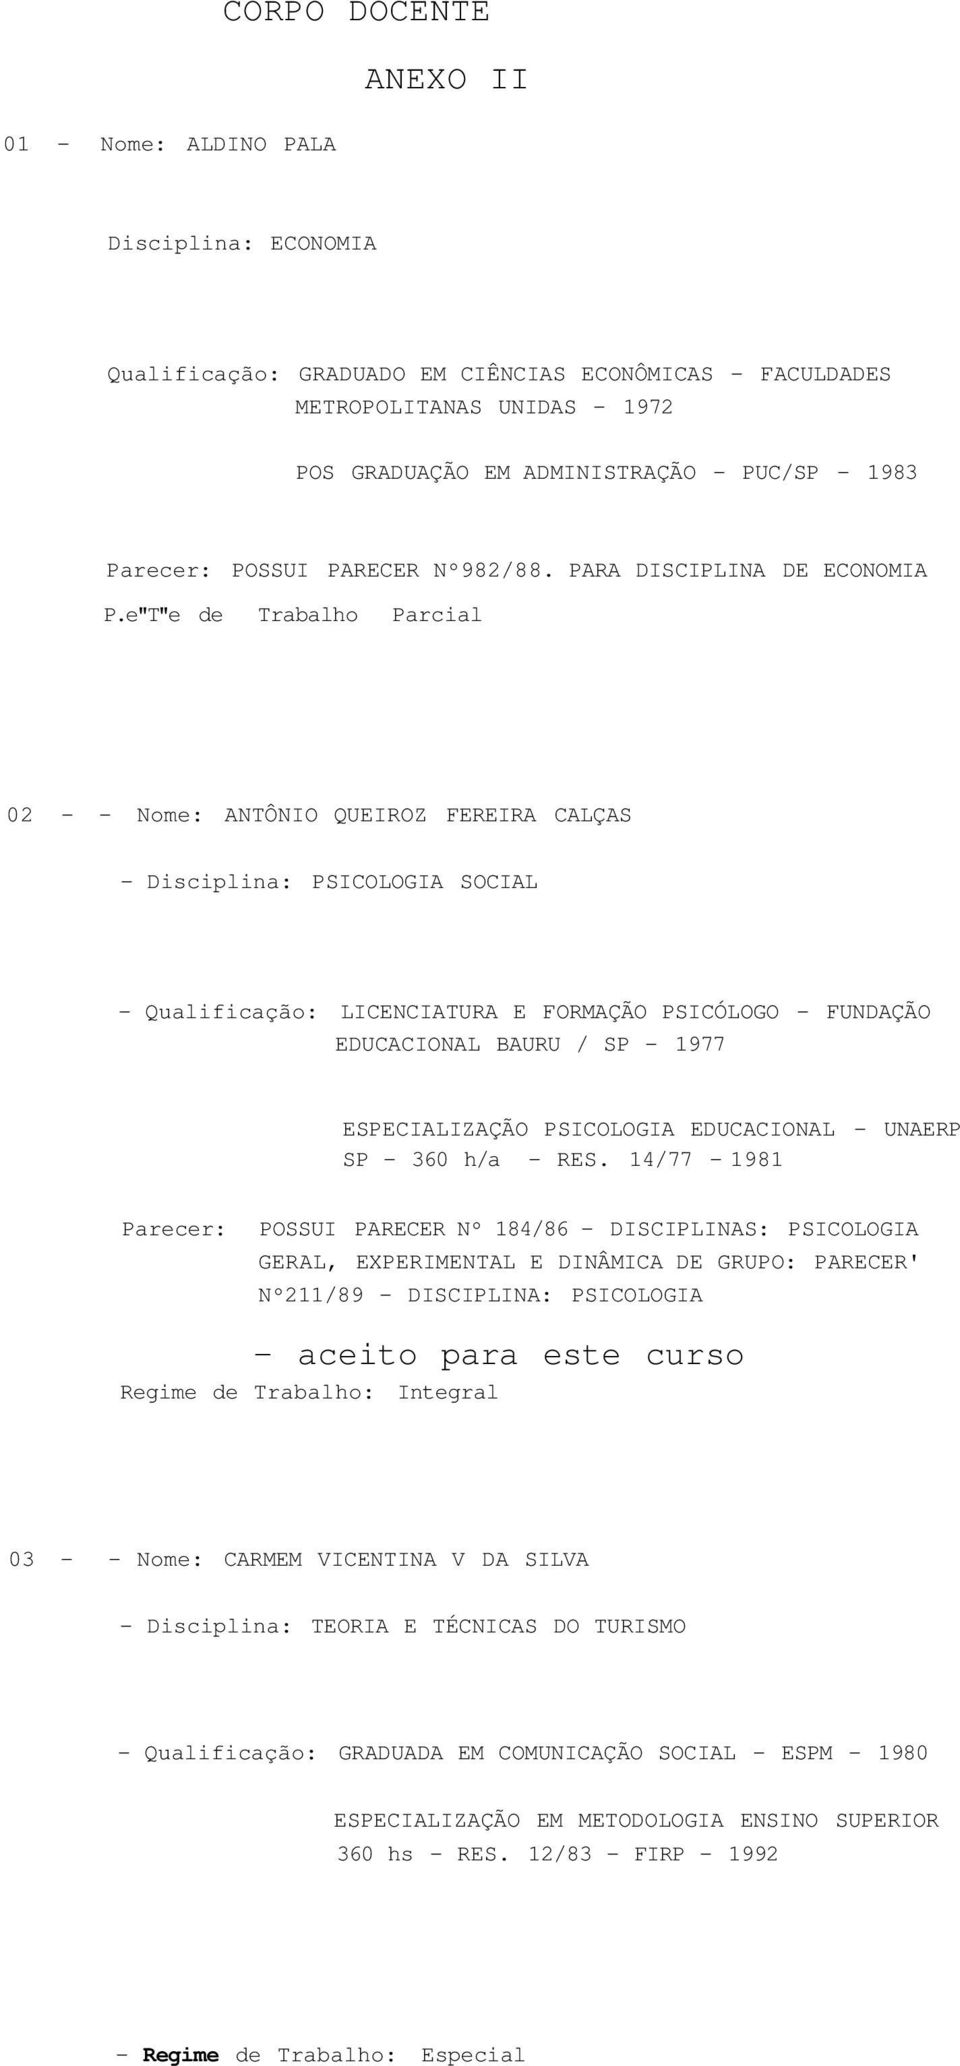 e"T"e de Trabalho Parcial 02 - - Nome: ANTÔNIO QUEIROZ FEREIRA CALÇAS - Disciplina: PSICOLOGIA SOCIAL - Qualificação: LICENCIATURA E FORMAÇÃO PSICÓLOGO - FUNDAÇÃO EDUCACIONAL BAURU / SP - 1977